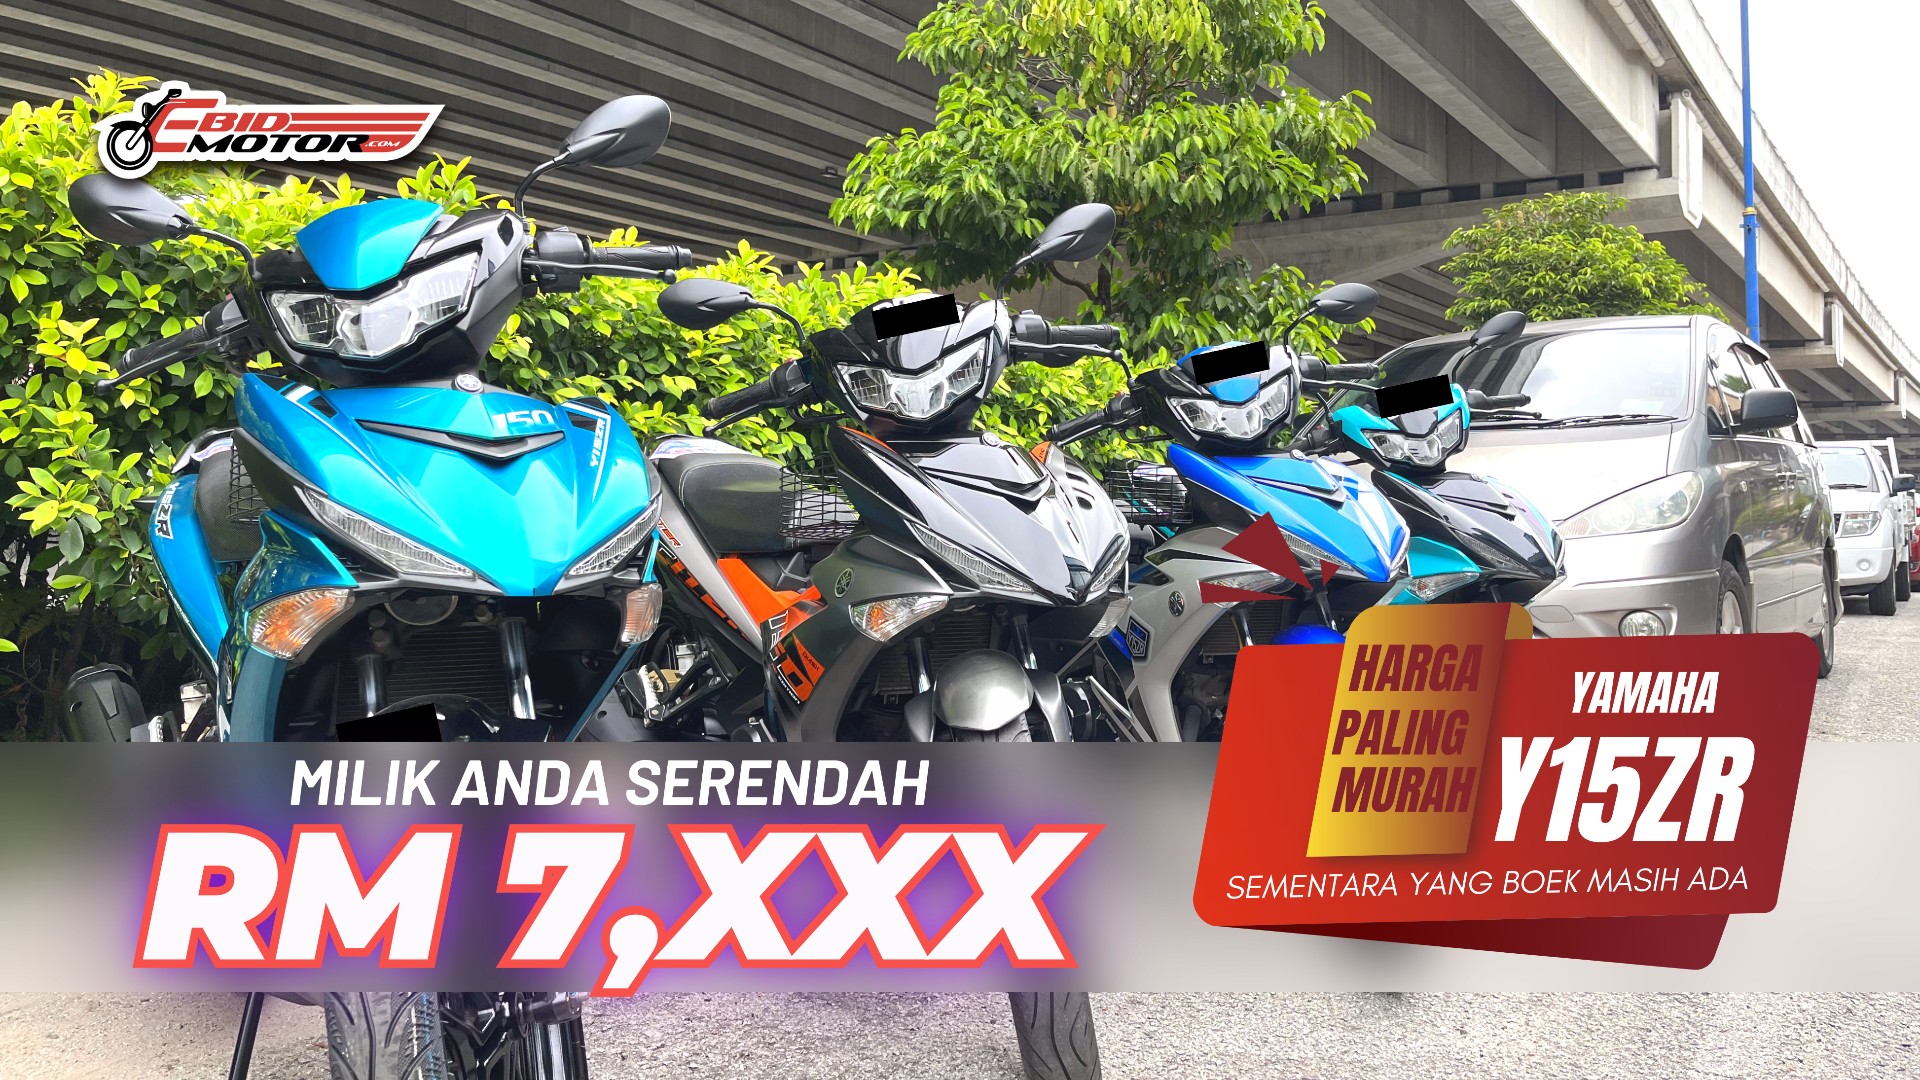 Miliki Yamaha Y15ZR TIPTOP Pertama Anda Dari Harga Serendah RM 7,XXX!